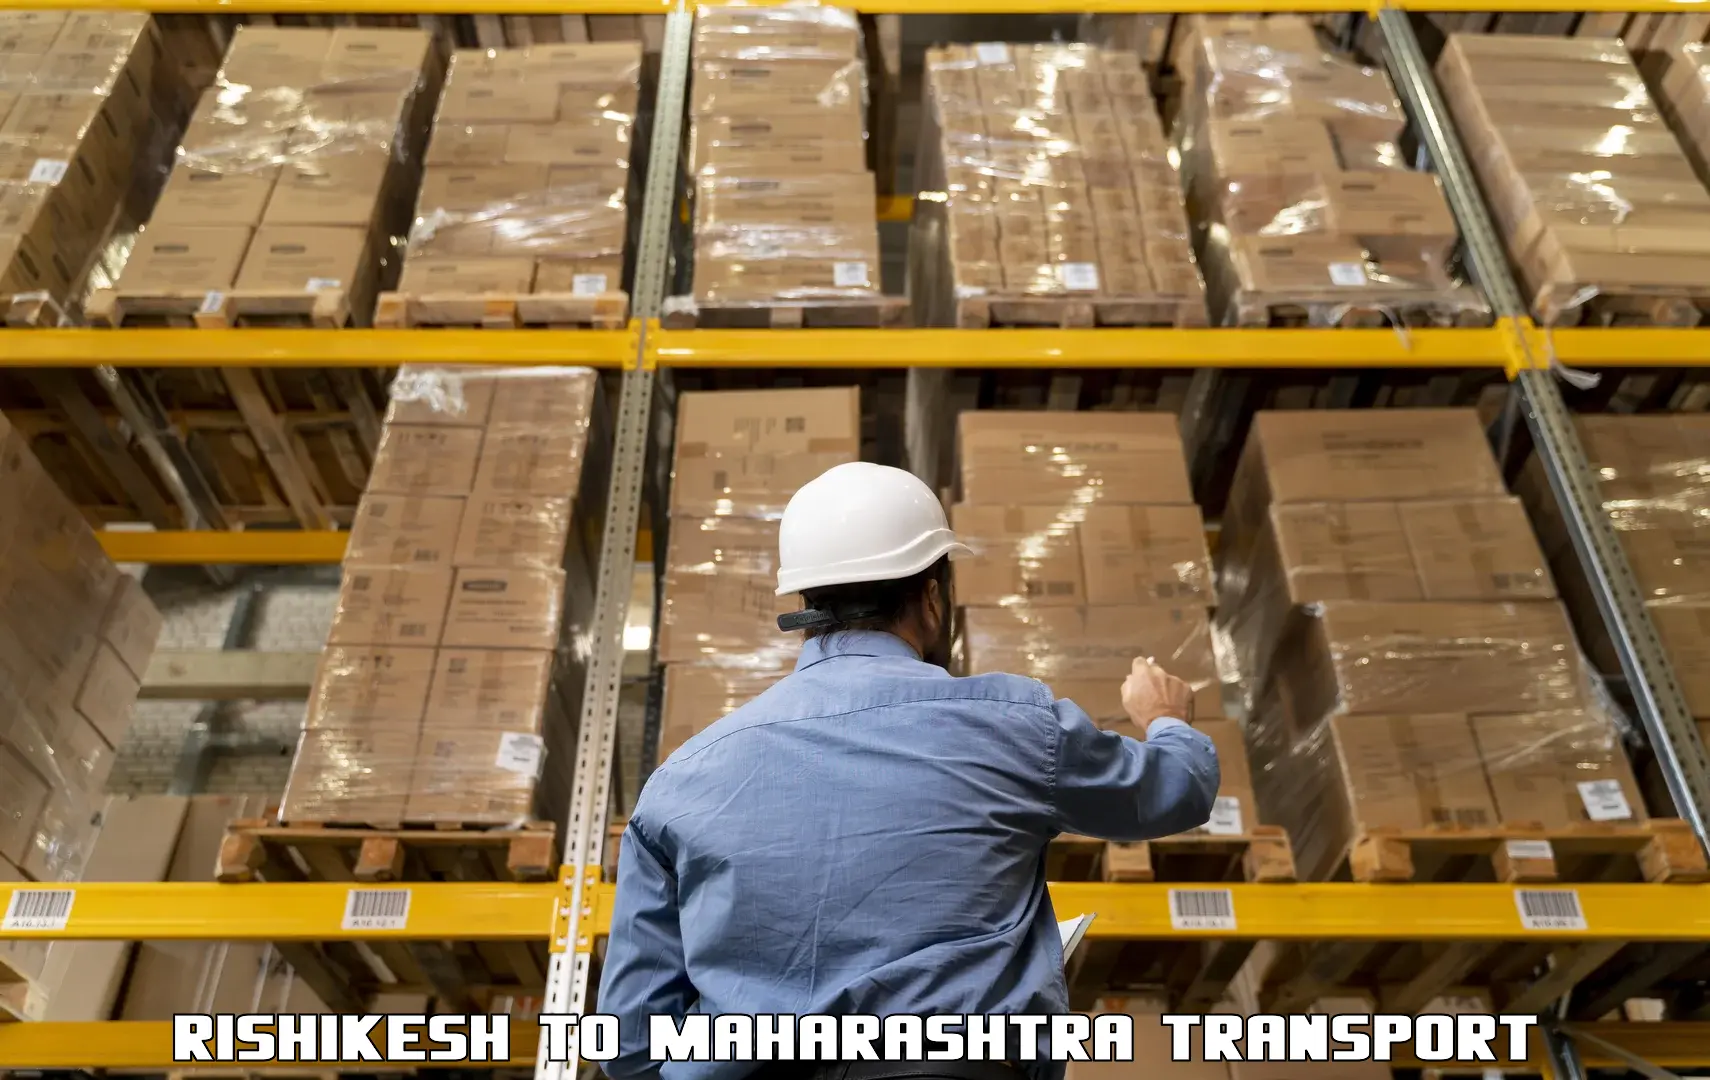 India truck logistics services Rishikesh to Shrivardhan